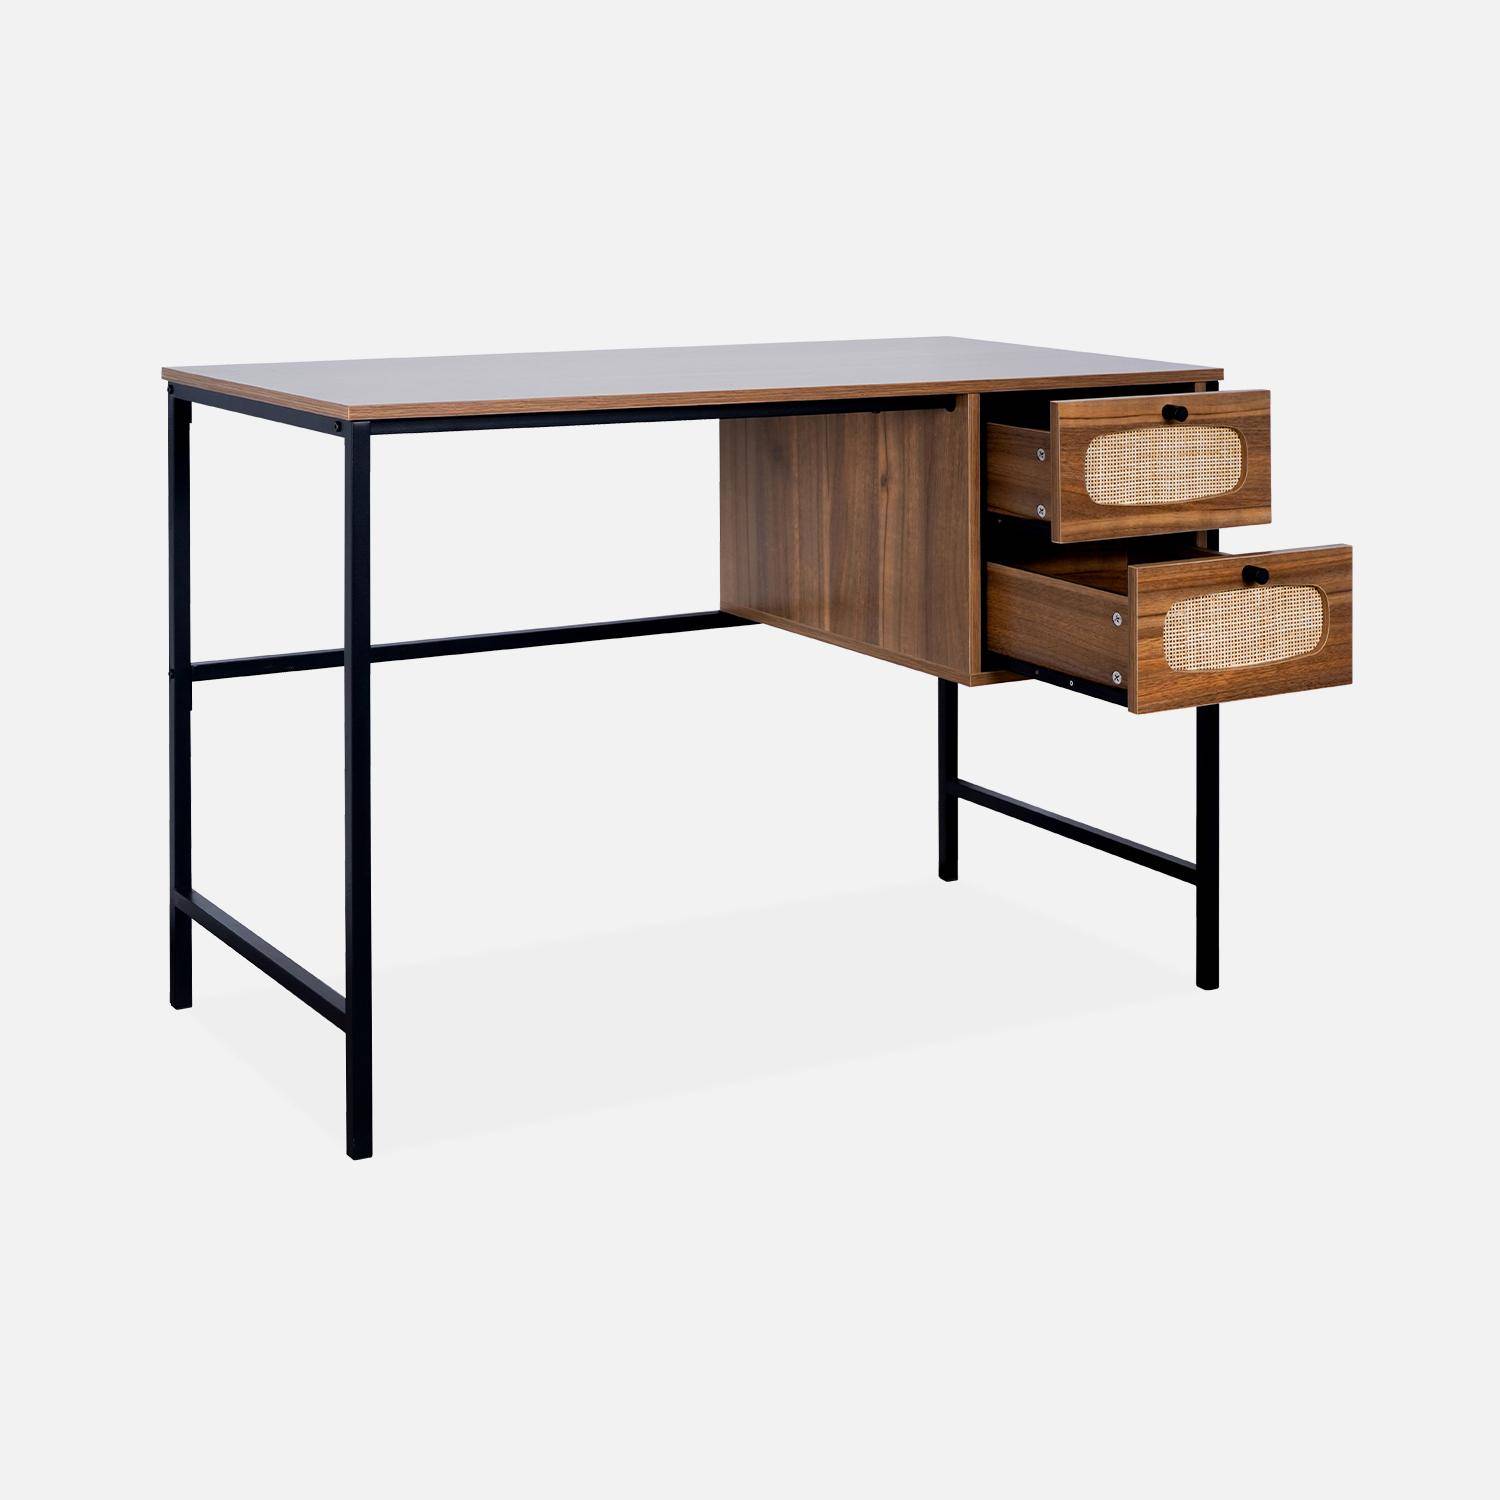 Retro bureau met hout- en rieteffect, zwarte metalen poten en handgrepen,sweeek,Photo5